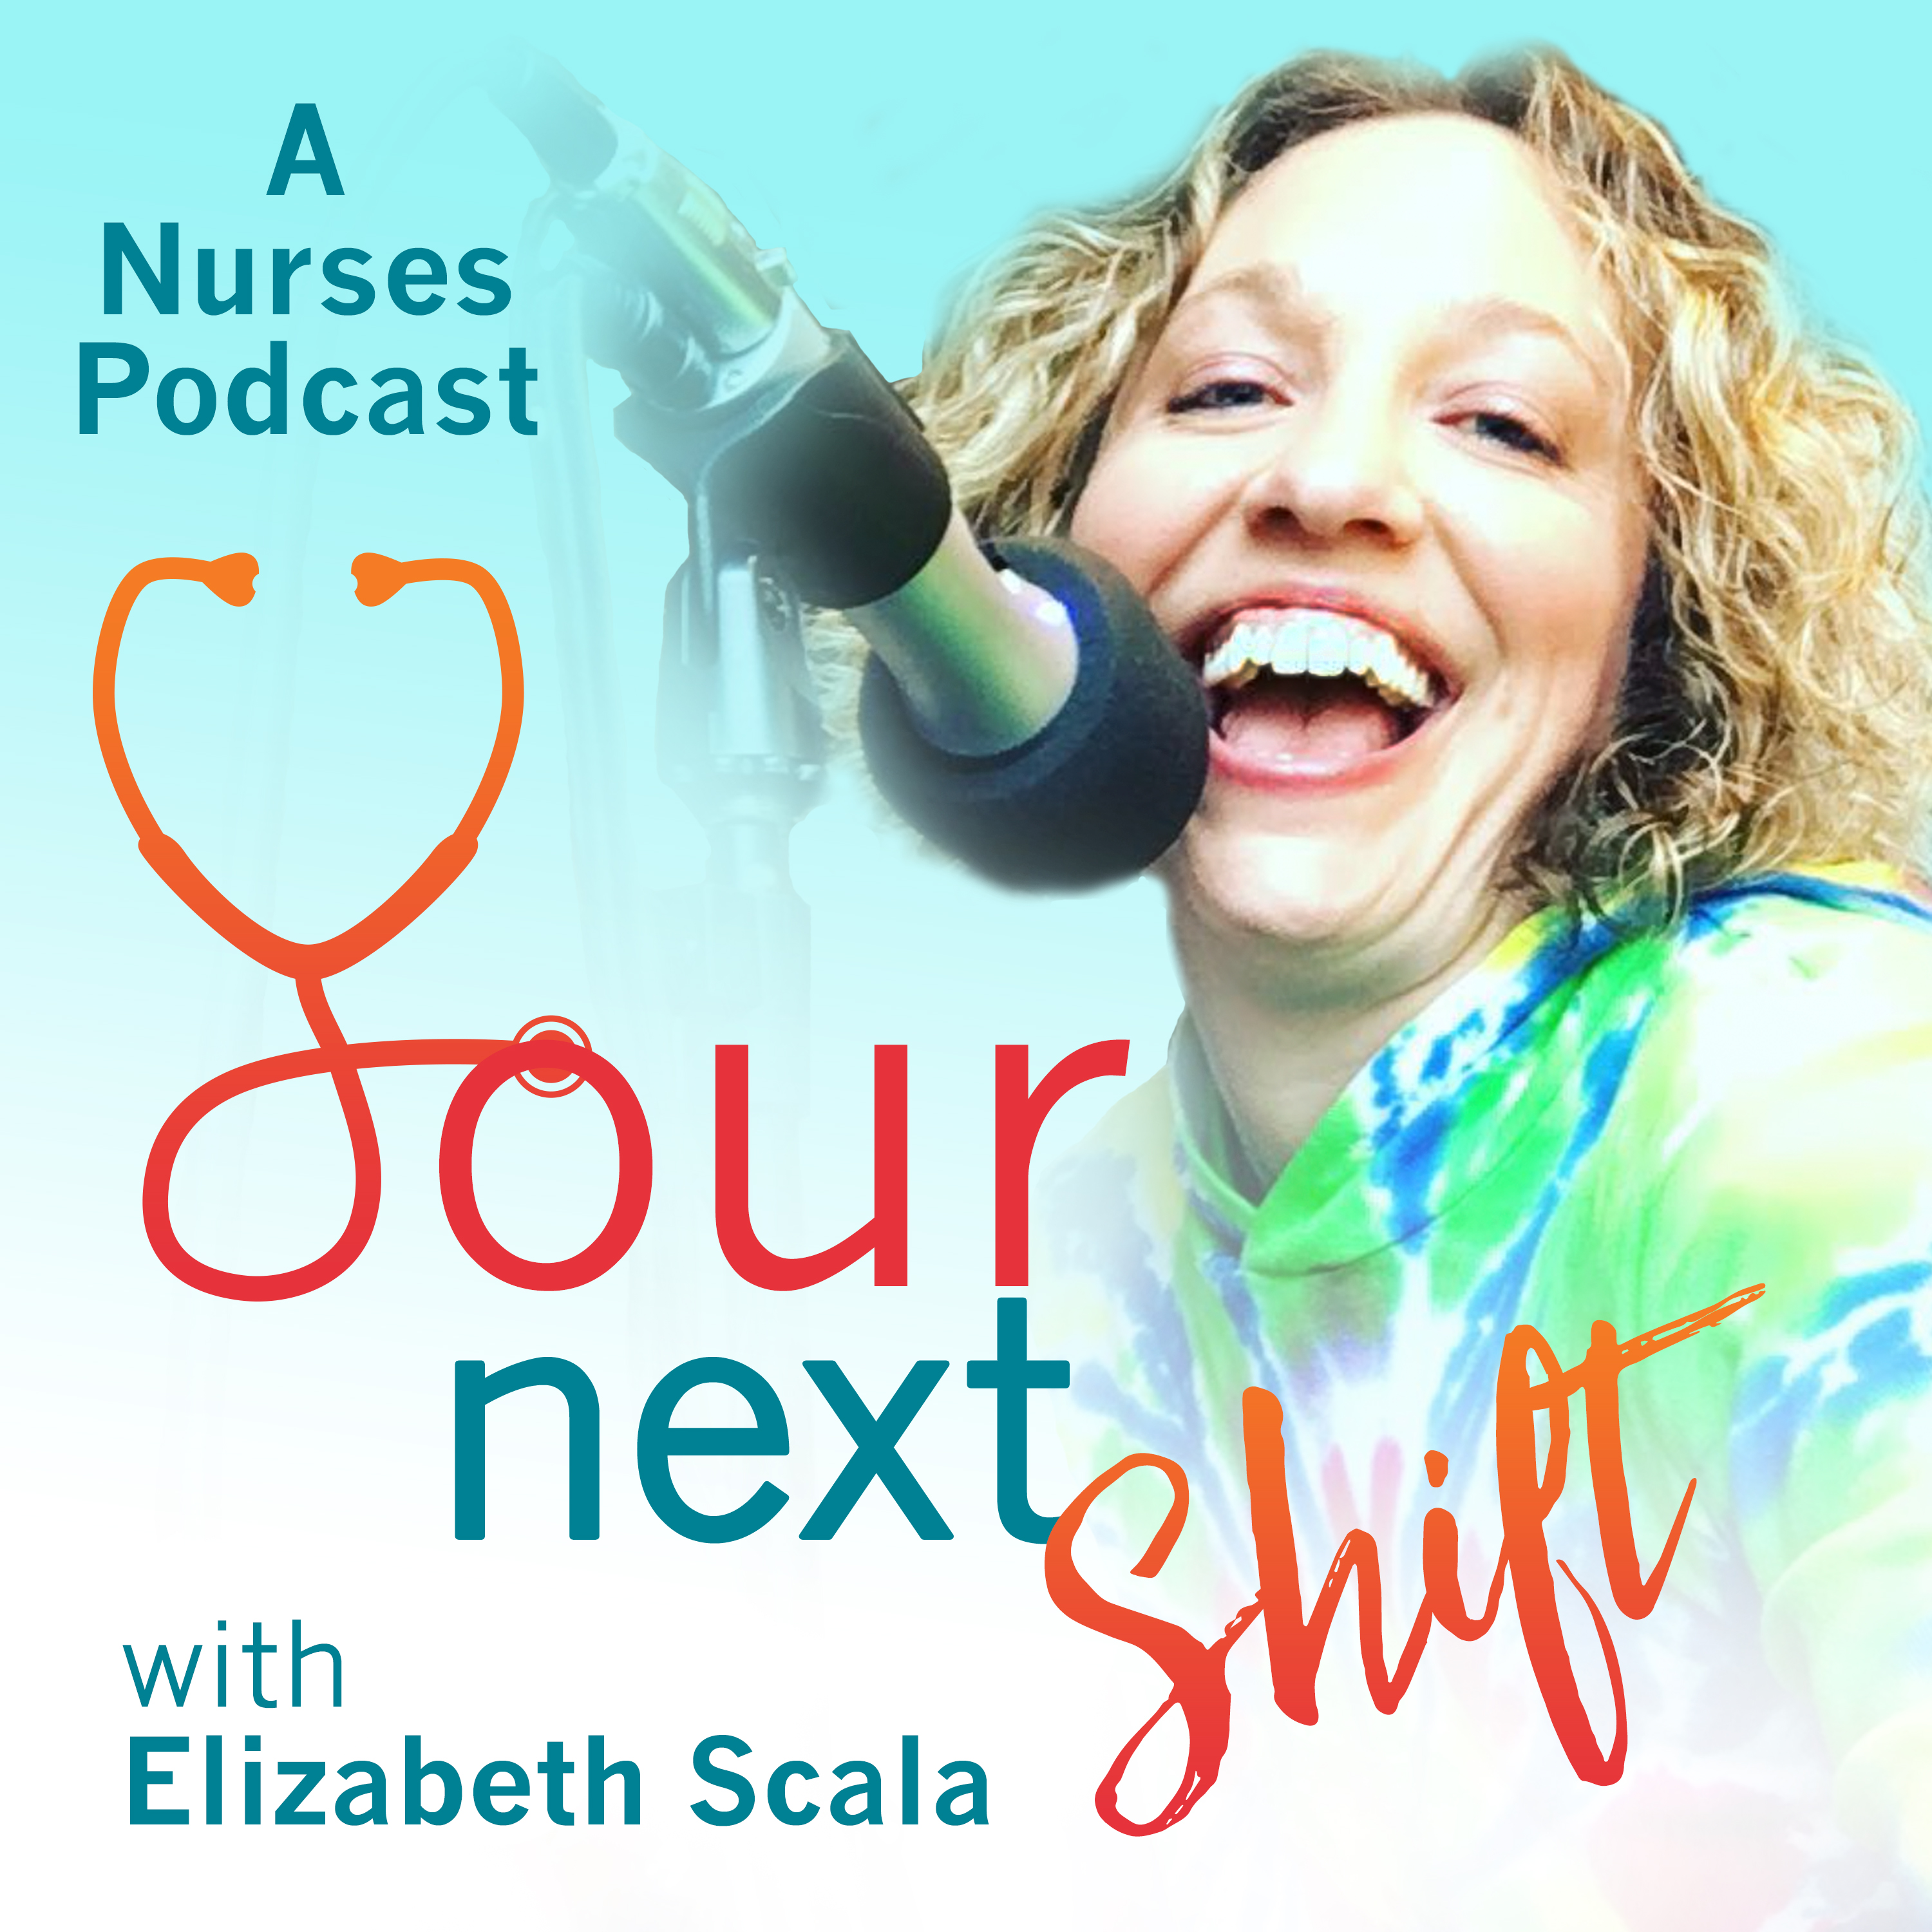  Twoja Następna Zmiana: Podcast kariery pielęgniarskiej dla pielęgniarek i studentów pielęgniarstwa